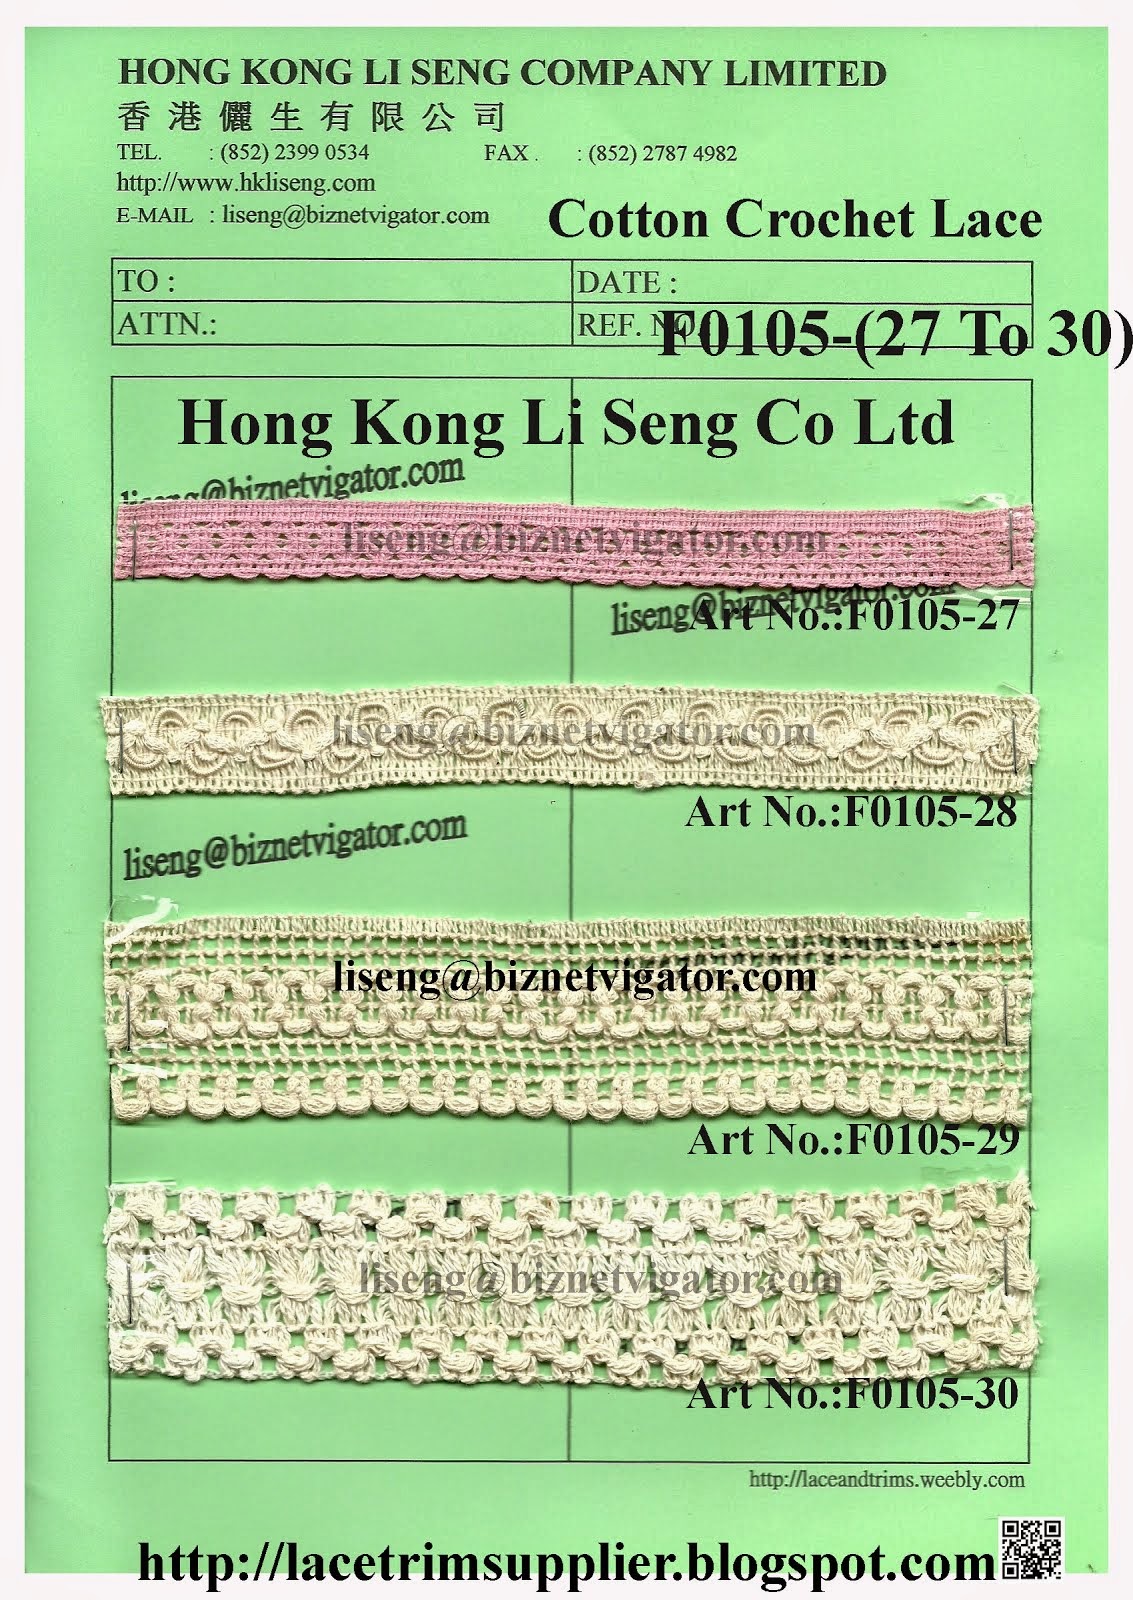 Hand Crochet Lace in Machine made Manufacturer - Hong Kong Li Seng Co Ltd